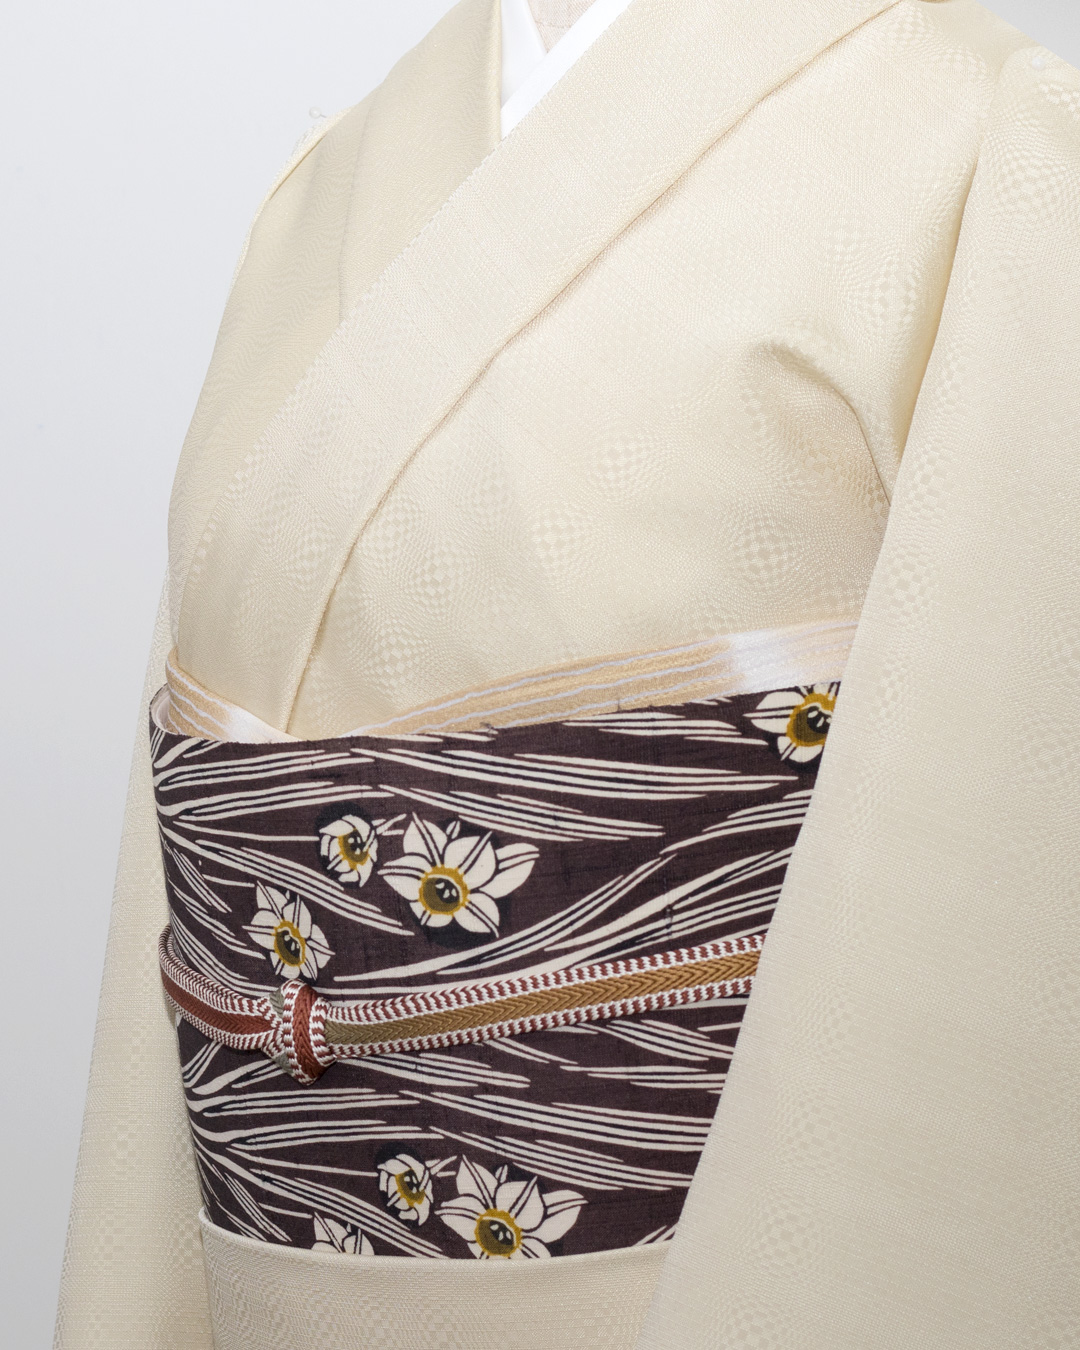 武村小平さんに別注した九寸帯「スイセン」の紬地と白たか織着尺のコーディネート